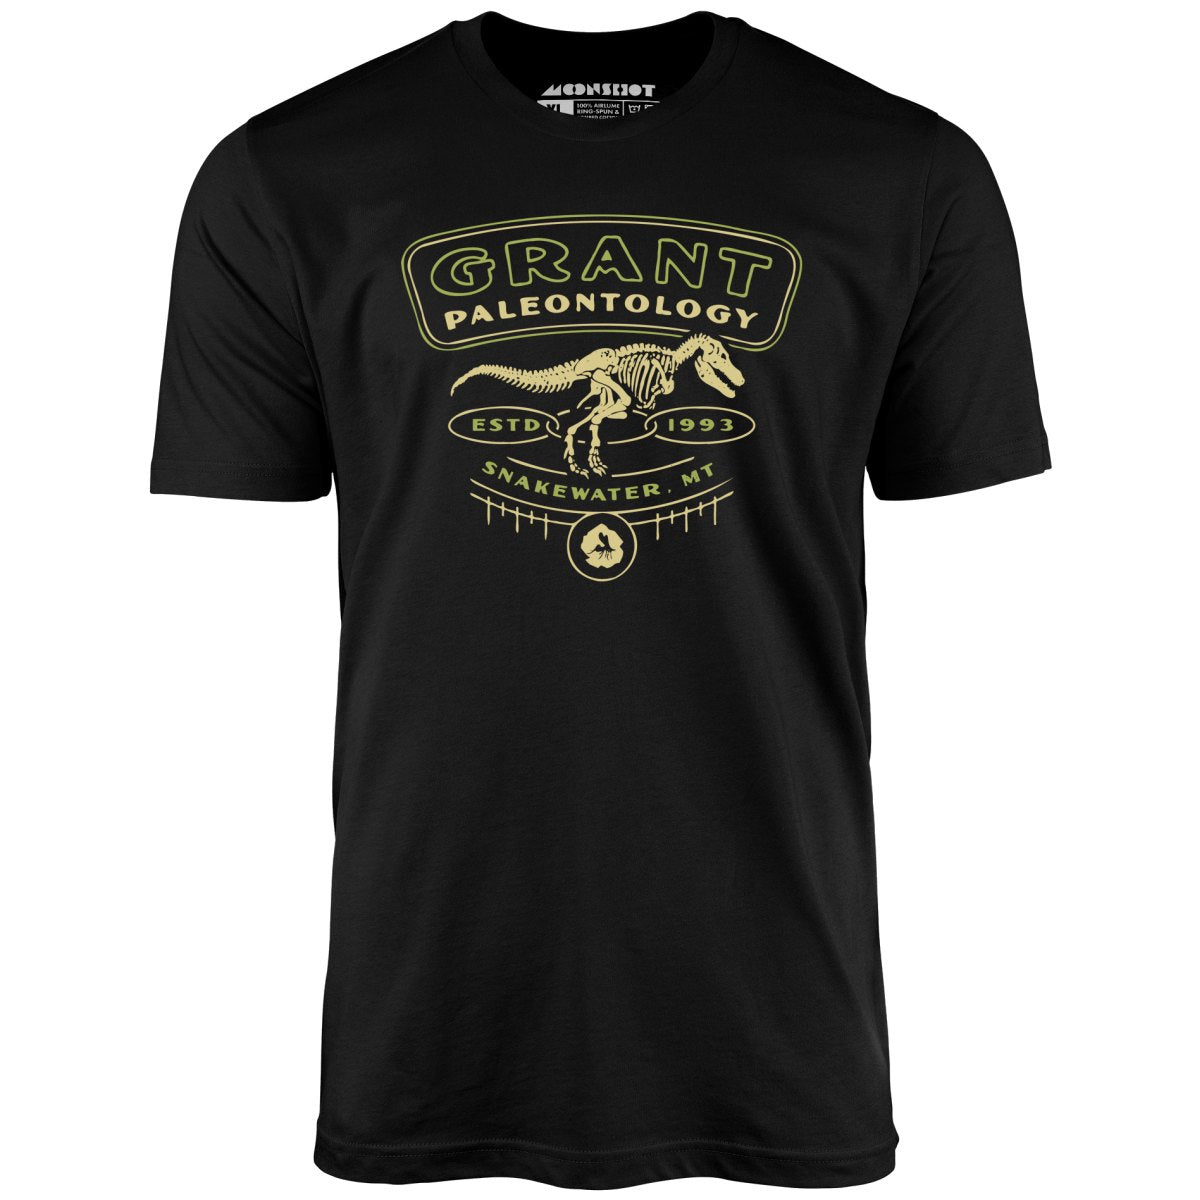 Grant Paleontology - Unisex T-Shirt